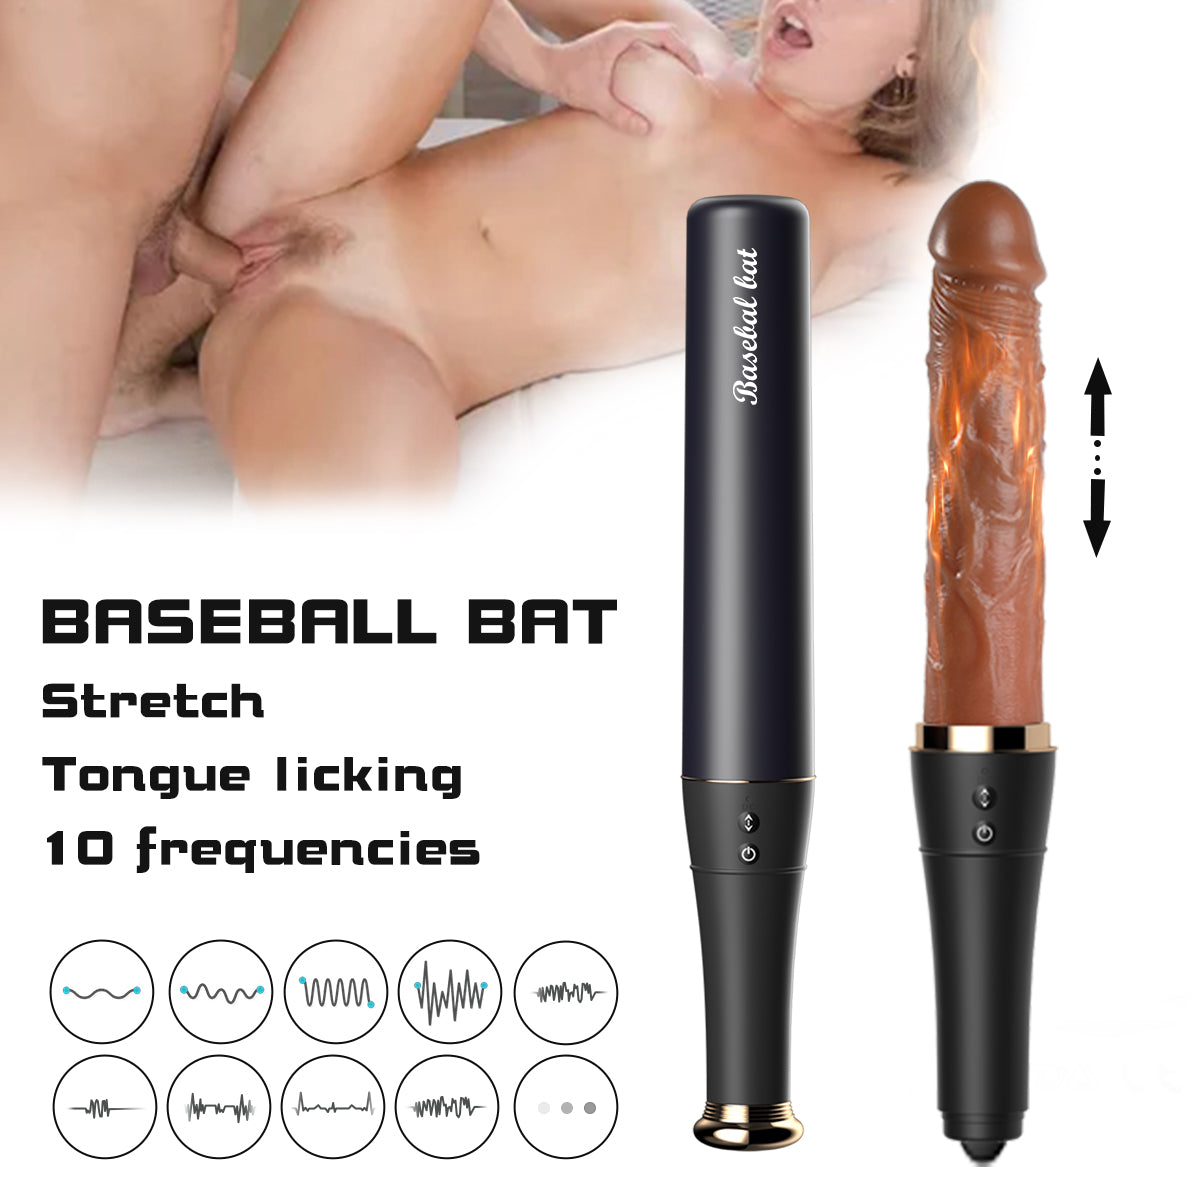 Baseball bat vibrator stretch tongue licking 10 frequencies (1)